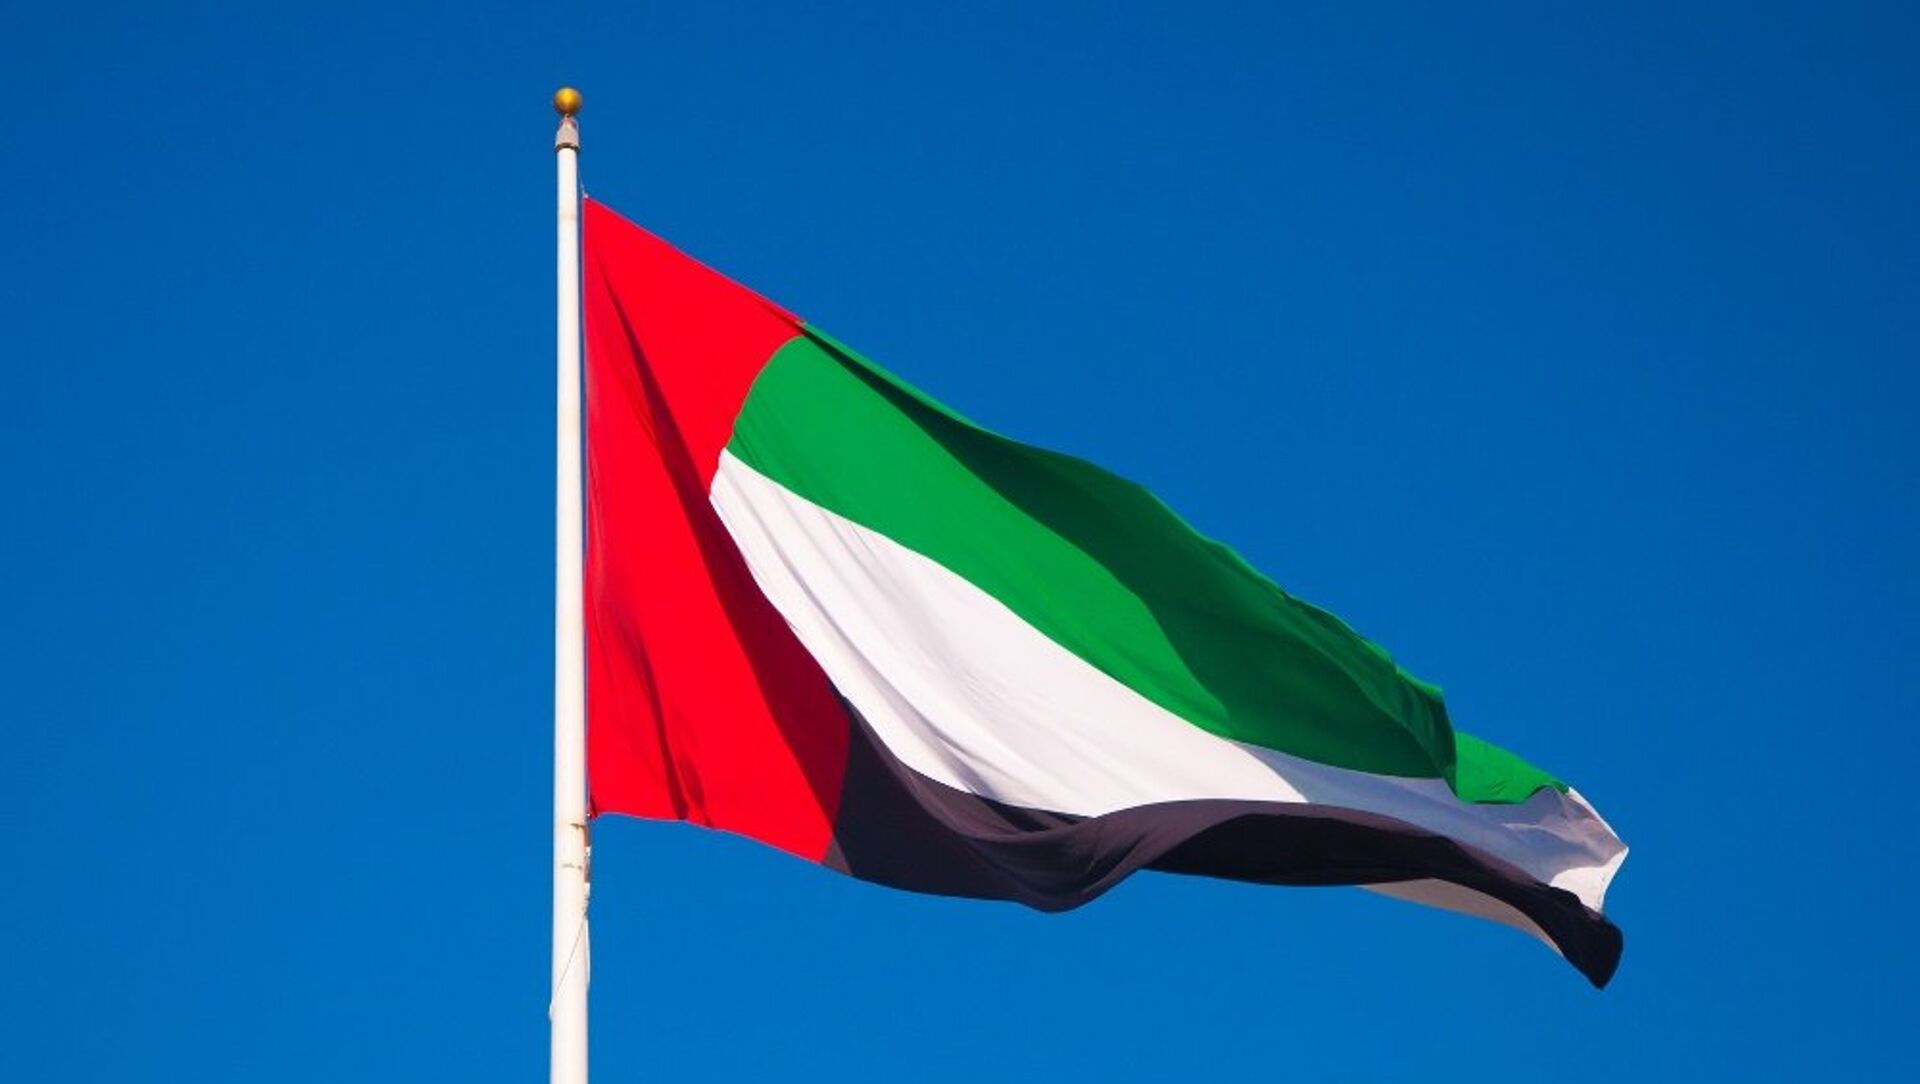 Nhằm giảm bớt gánh nặng tài chính cho công dân của mình, chính phủ UAE đã quyết định miễn giảm một phần khoản nợ của người dân. Điều này chắc chắn sẽ mang lại nhiều niềm vui và sự bình yên cho các hộ gia đình.